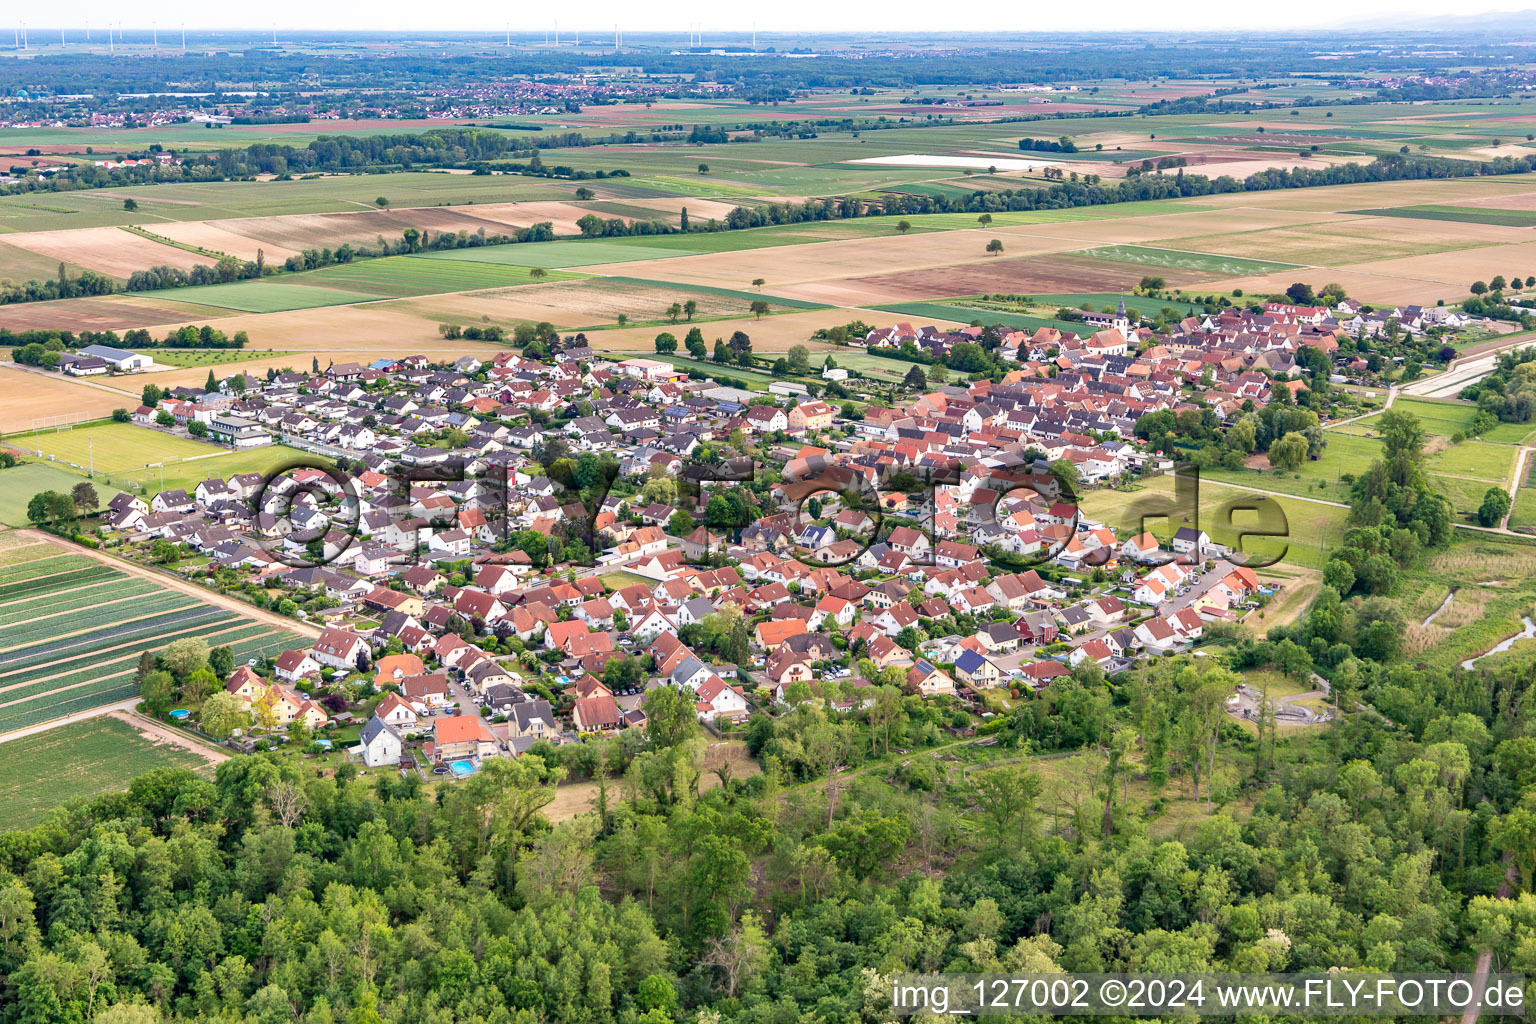 Freisbach dans le département Rhénanie-Palatinat, Allemagne du point de vue du drone